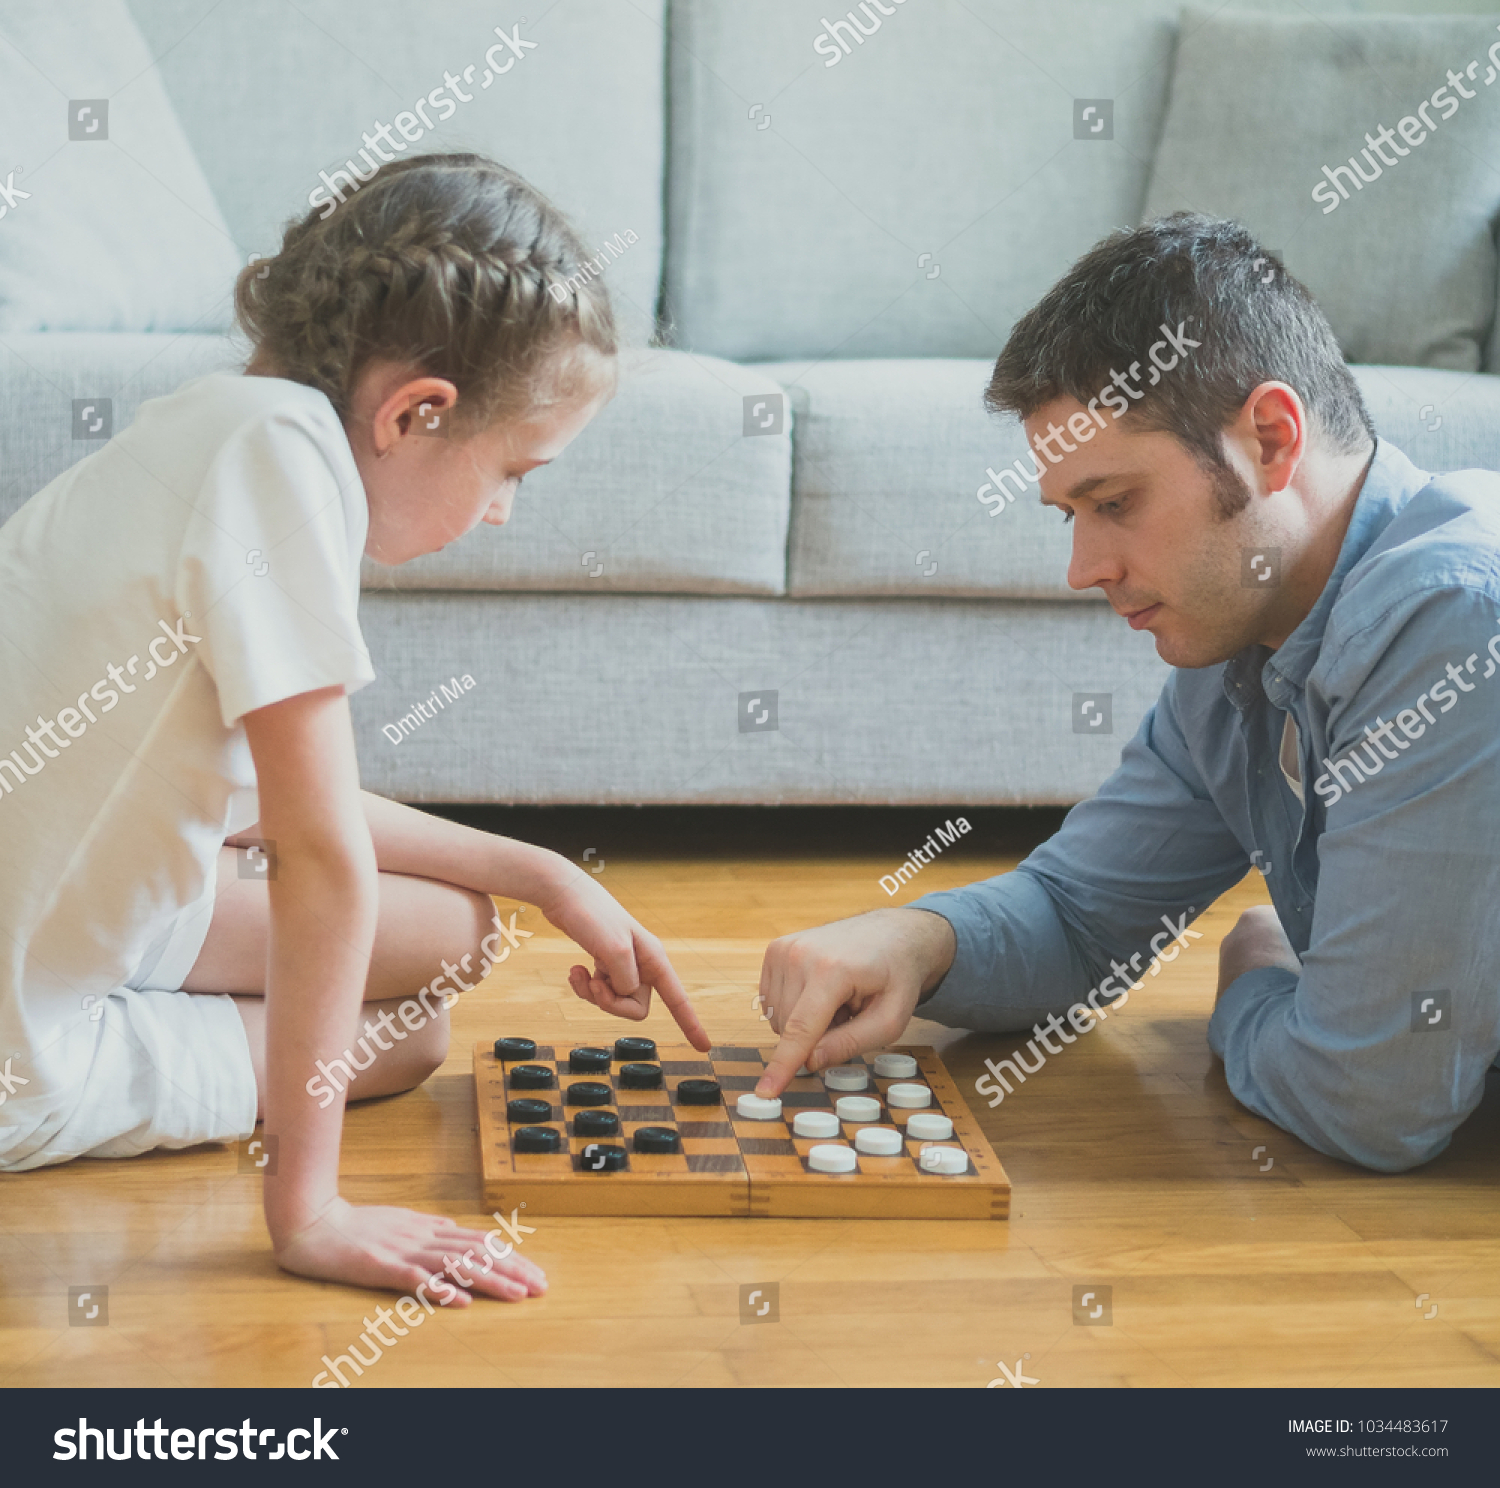 Игра на раздевание мальчик. Семья играет в настольные игры. Папа и дочь играют в шахматы. Семья играет в шахматы. Папа дома с дочкой играются в шашки.